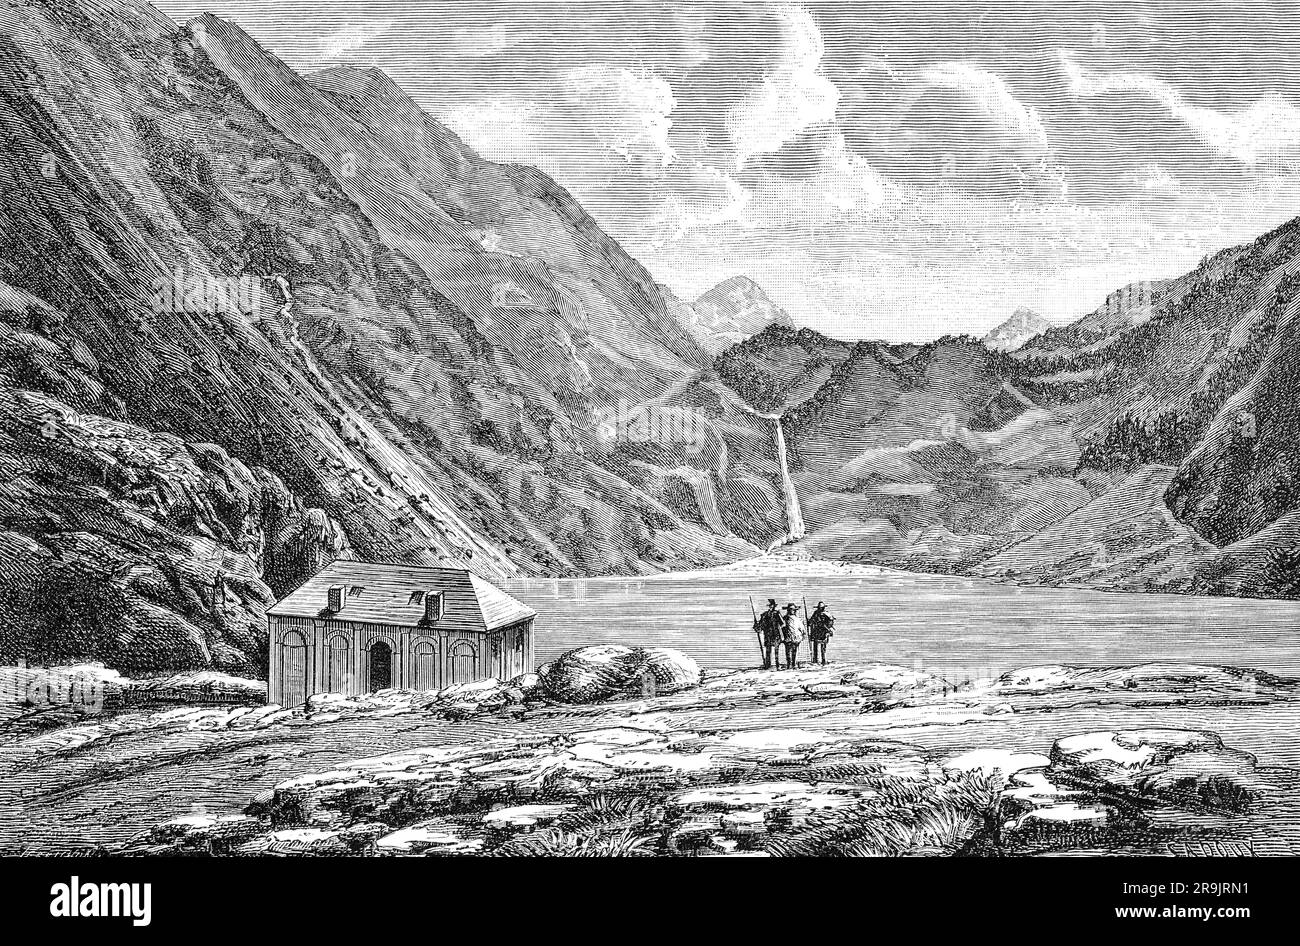 Une illustration de la fin du 19th siècle des gens par le refuge au bord de l'eau du lac d'Oô, un lac dans les Pyrénées, connu en particulier pour sa chute d'eau de 275 mètres de haut. Anciennement appelé Lac de Séculéjo, ce lac naturel est devenu artificiel depuis la construction d'un barrage. Banque D'Images